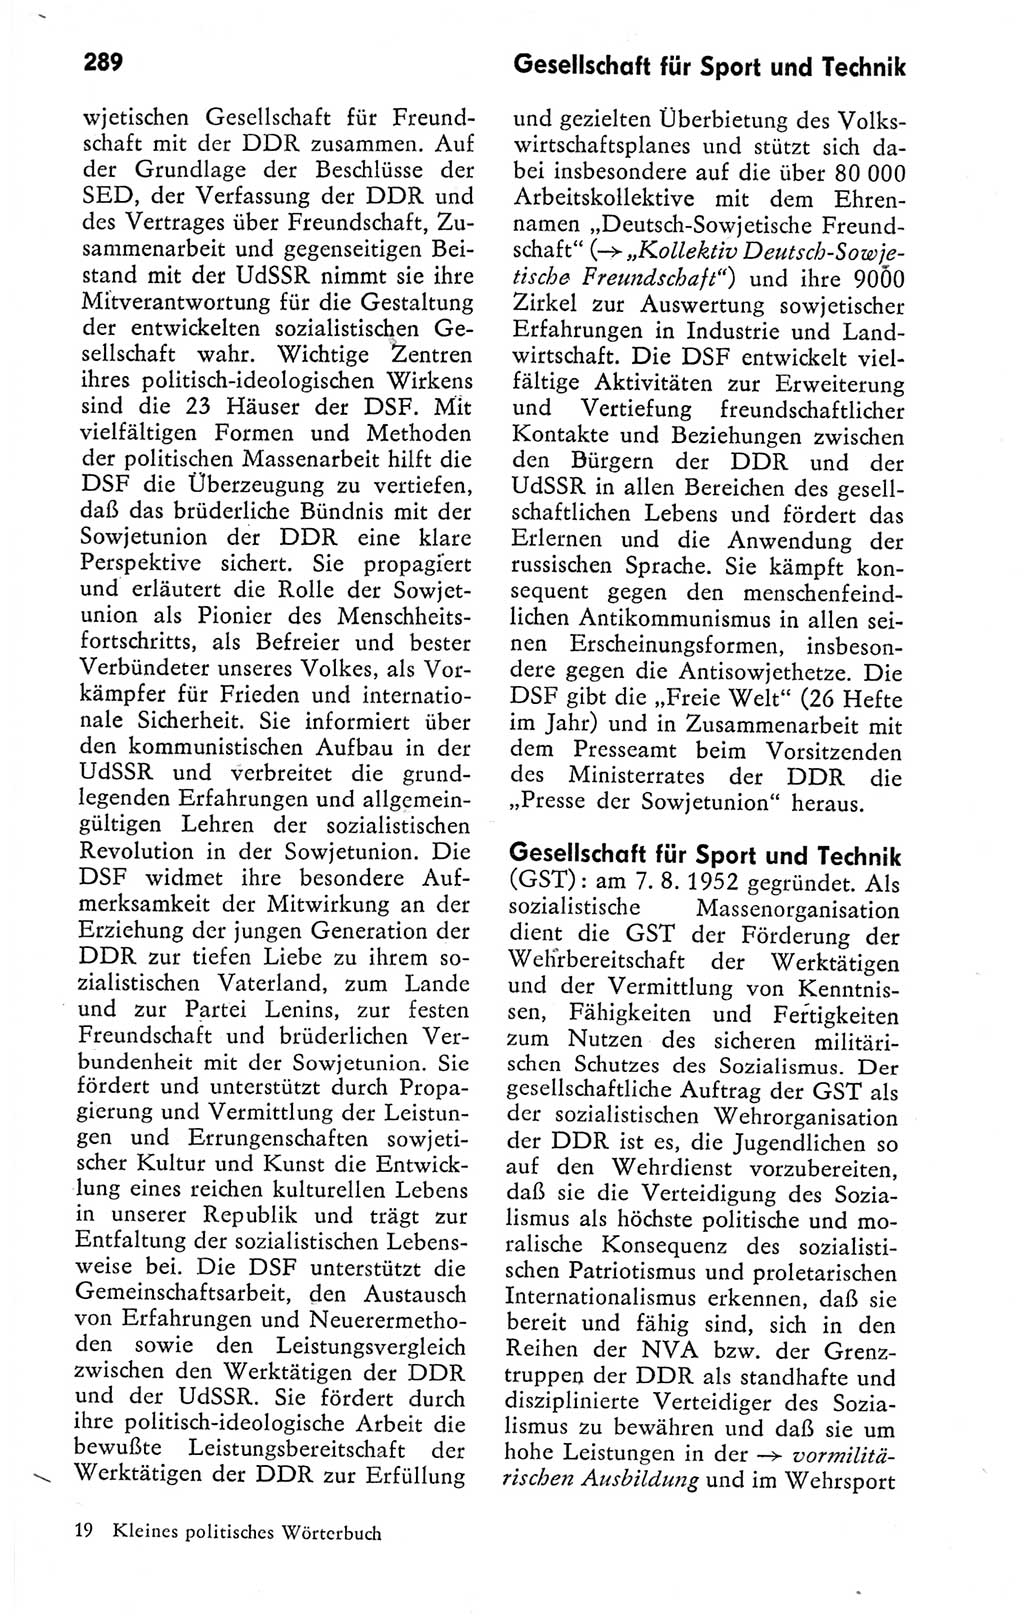 Kleines politisches Wörterbuch [Deutsche Demokratische Republik (DDR)] 1978, Seite 289 (Kl. pol. Wb. DDR 1978, S. 289)